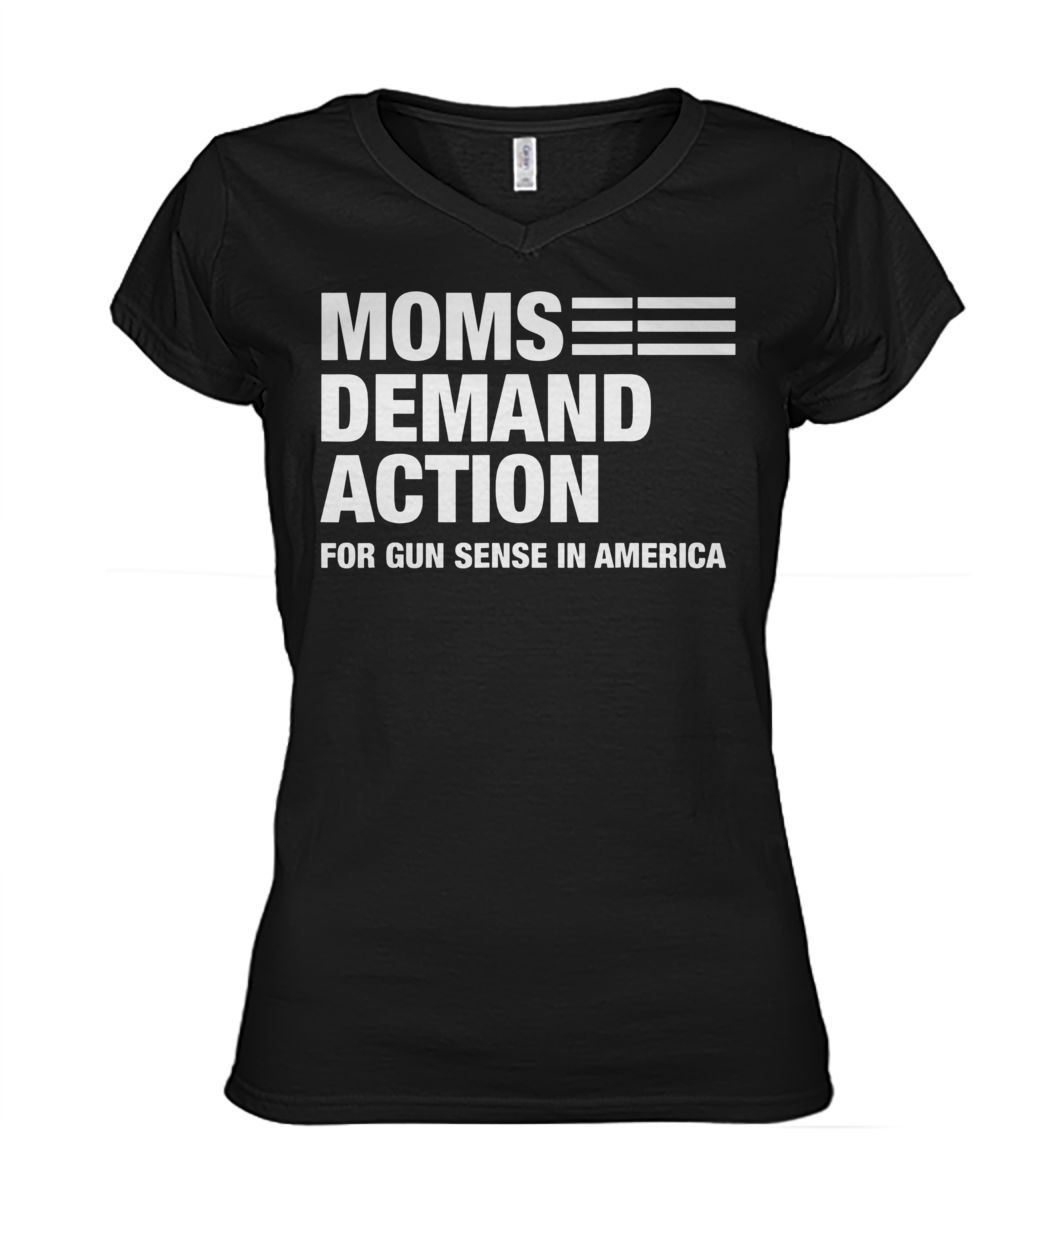 Moms demand action for gun sense in america women's v-neck